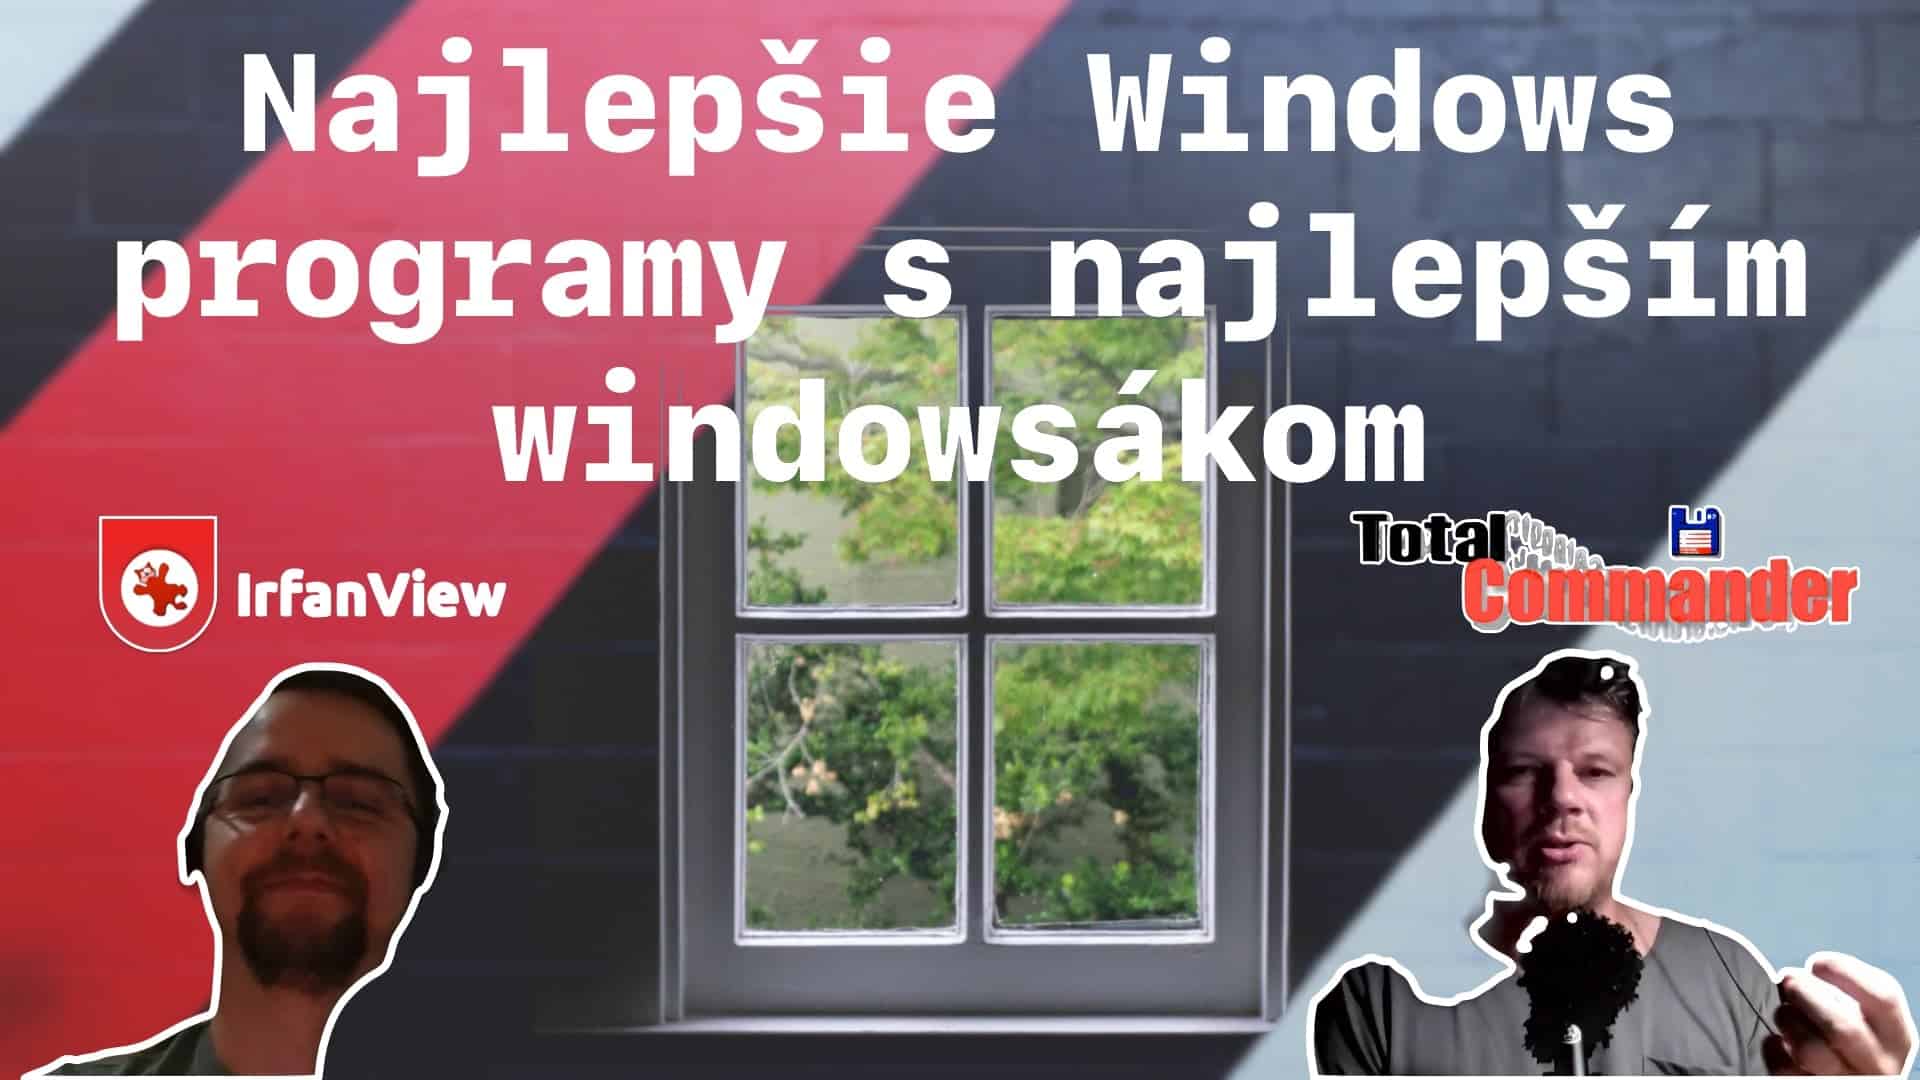 Najlepšie Windows programy s najlepším windowsákom